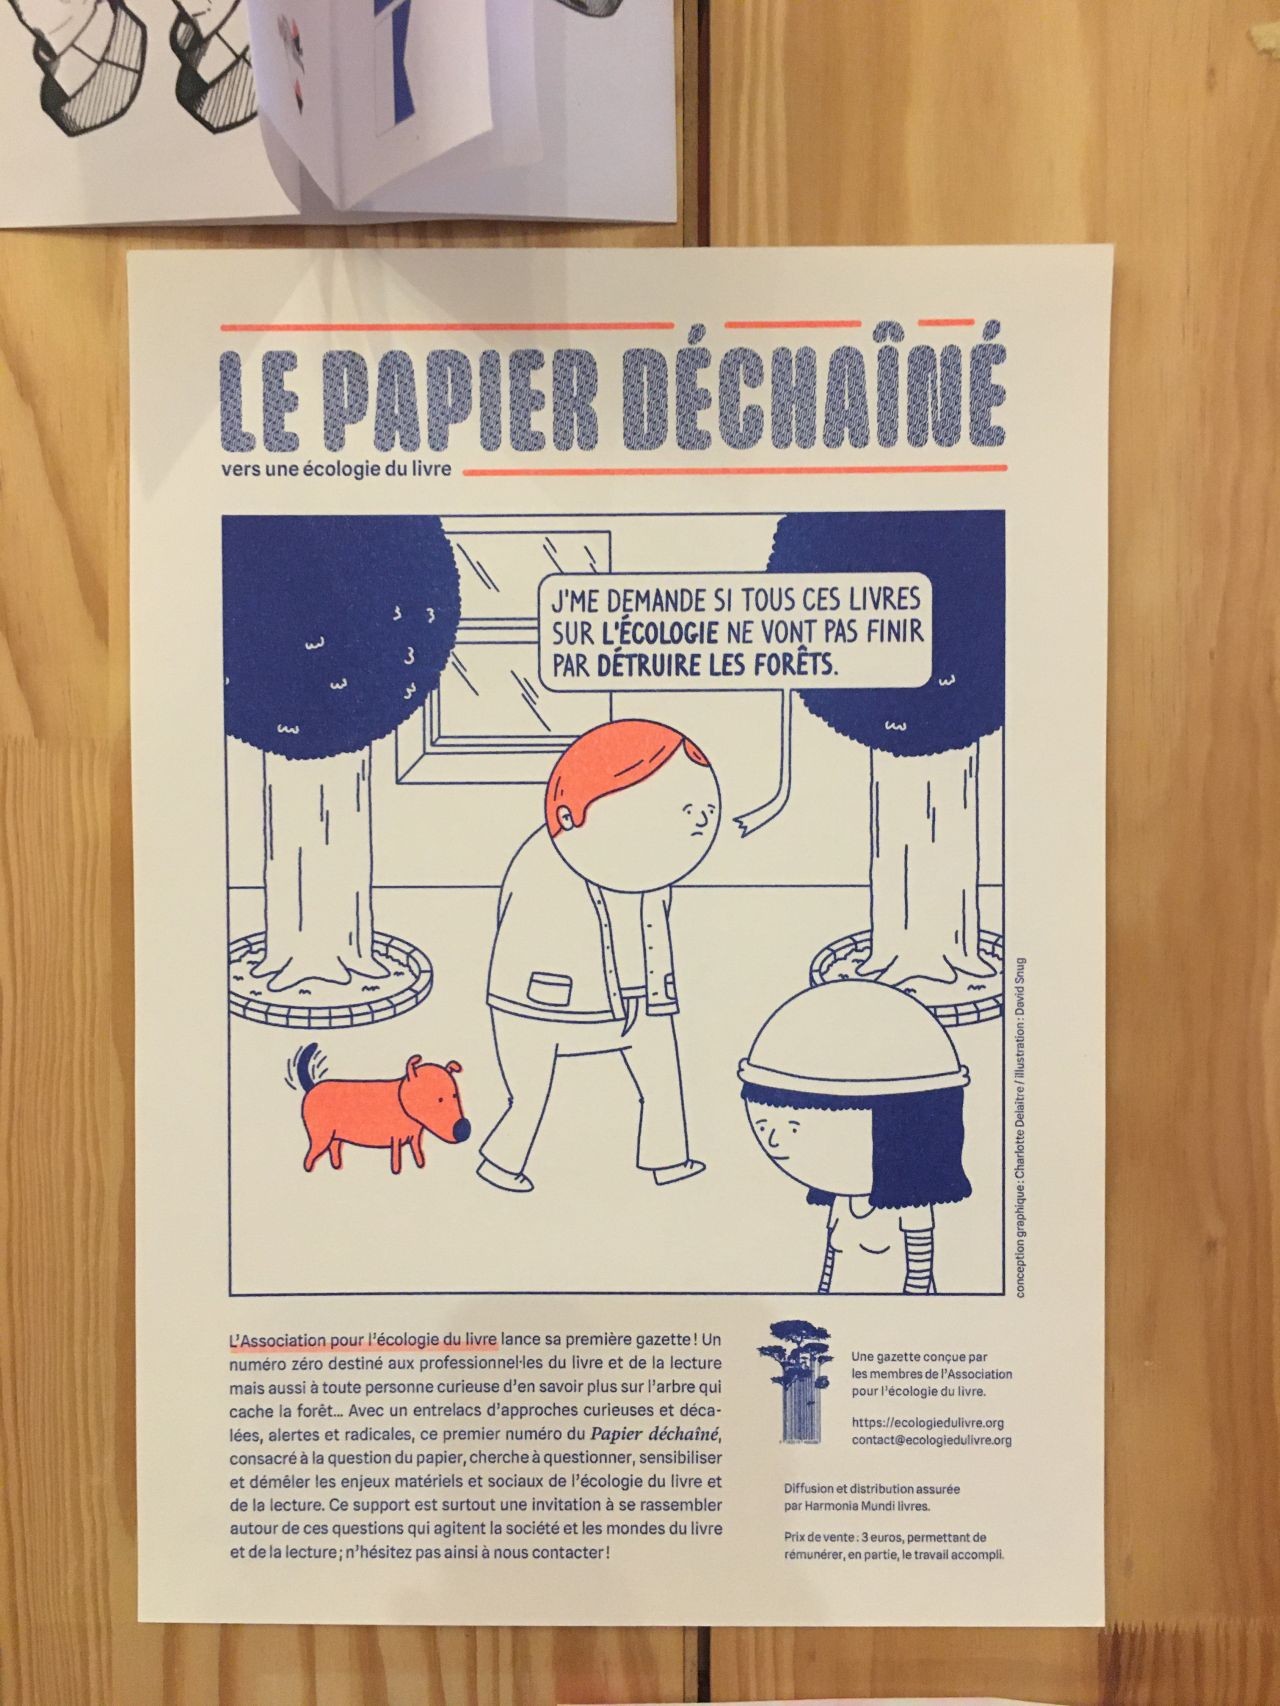 Une affichette de présentation de la gazette, avec un personnage se demandant si tous ces livres sur l'écologie ne vont pas finir par détruire les forêts (et un petit chien content)